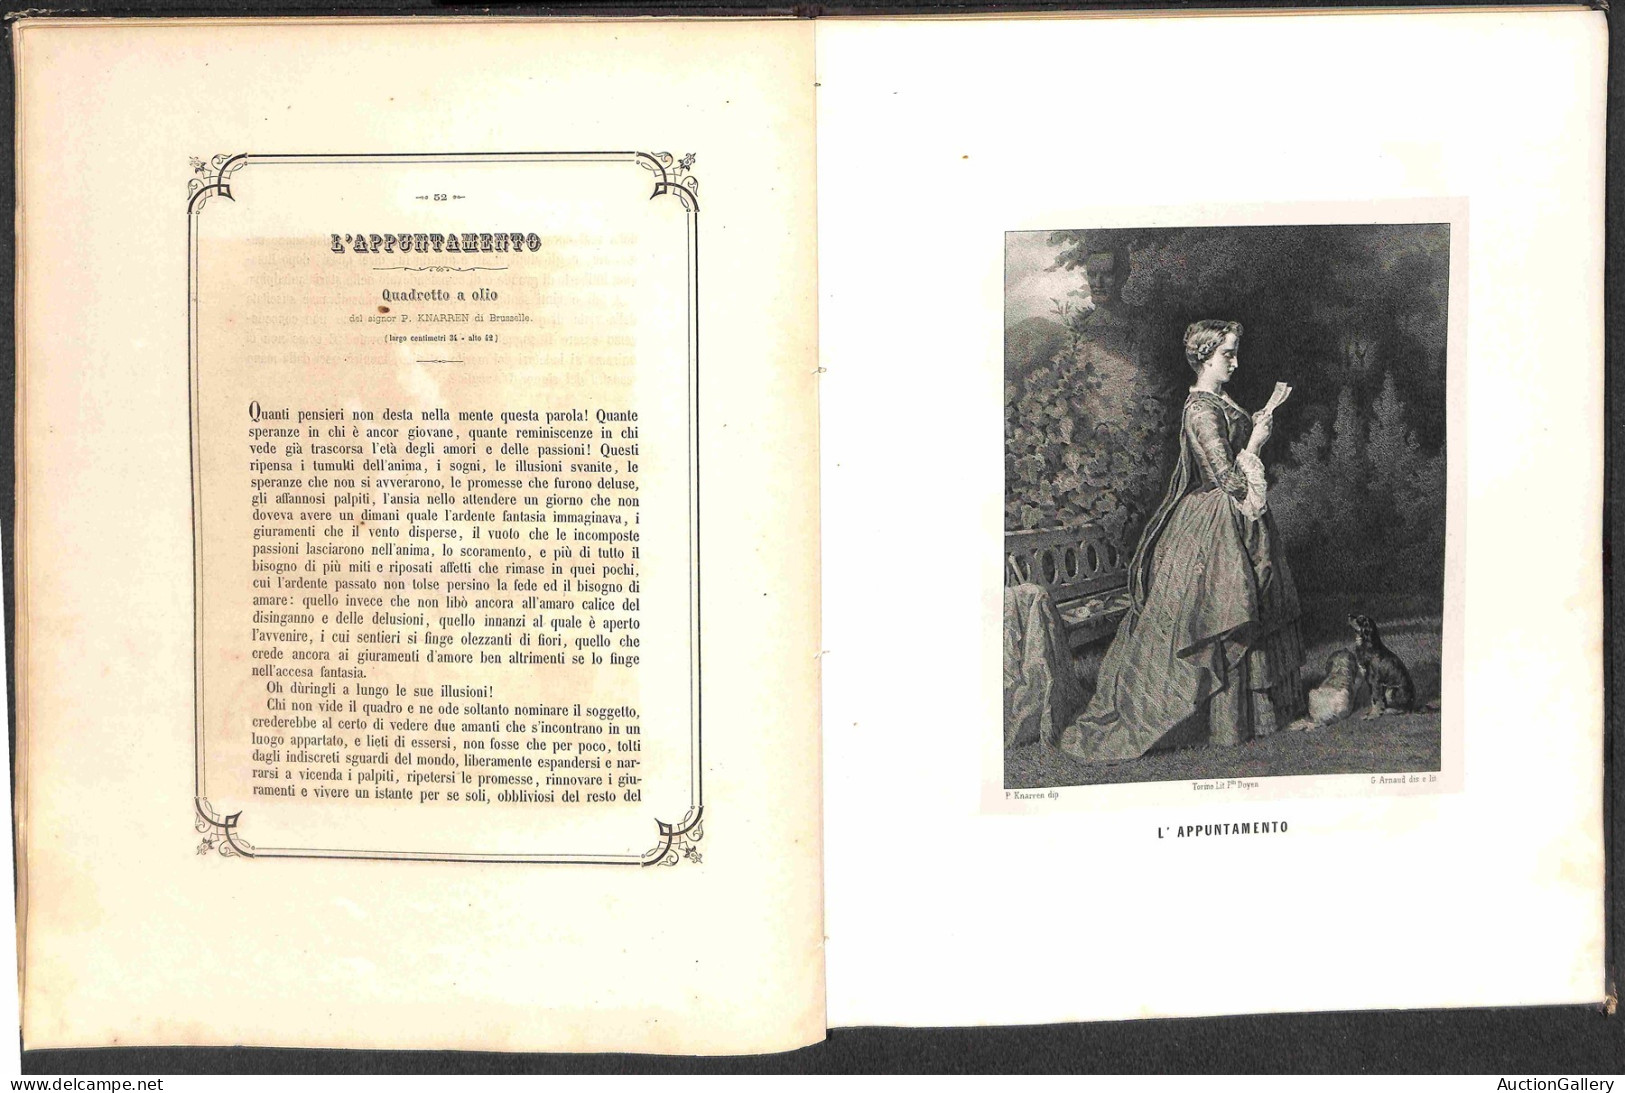 Prefilateliche - Prefilateliche - 1857 - Torino - Società Promotrice delle Belle Arti - elegante album della pubblica es